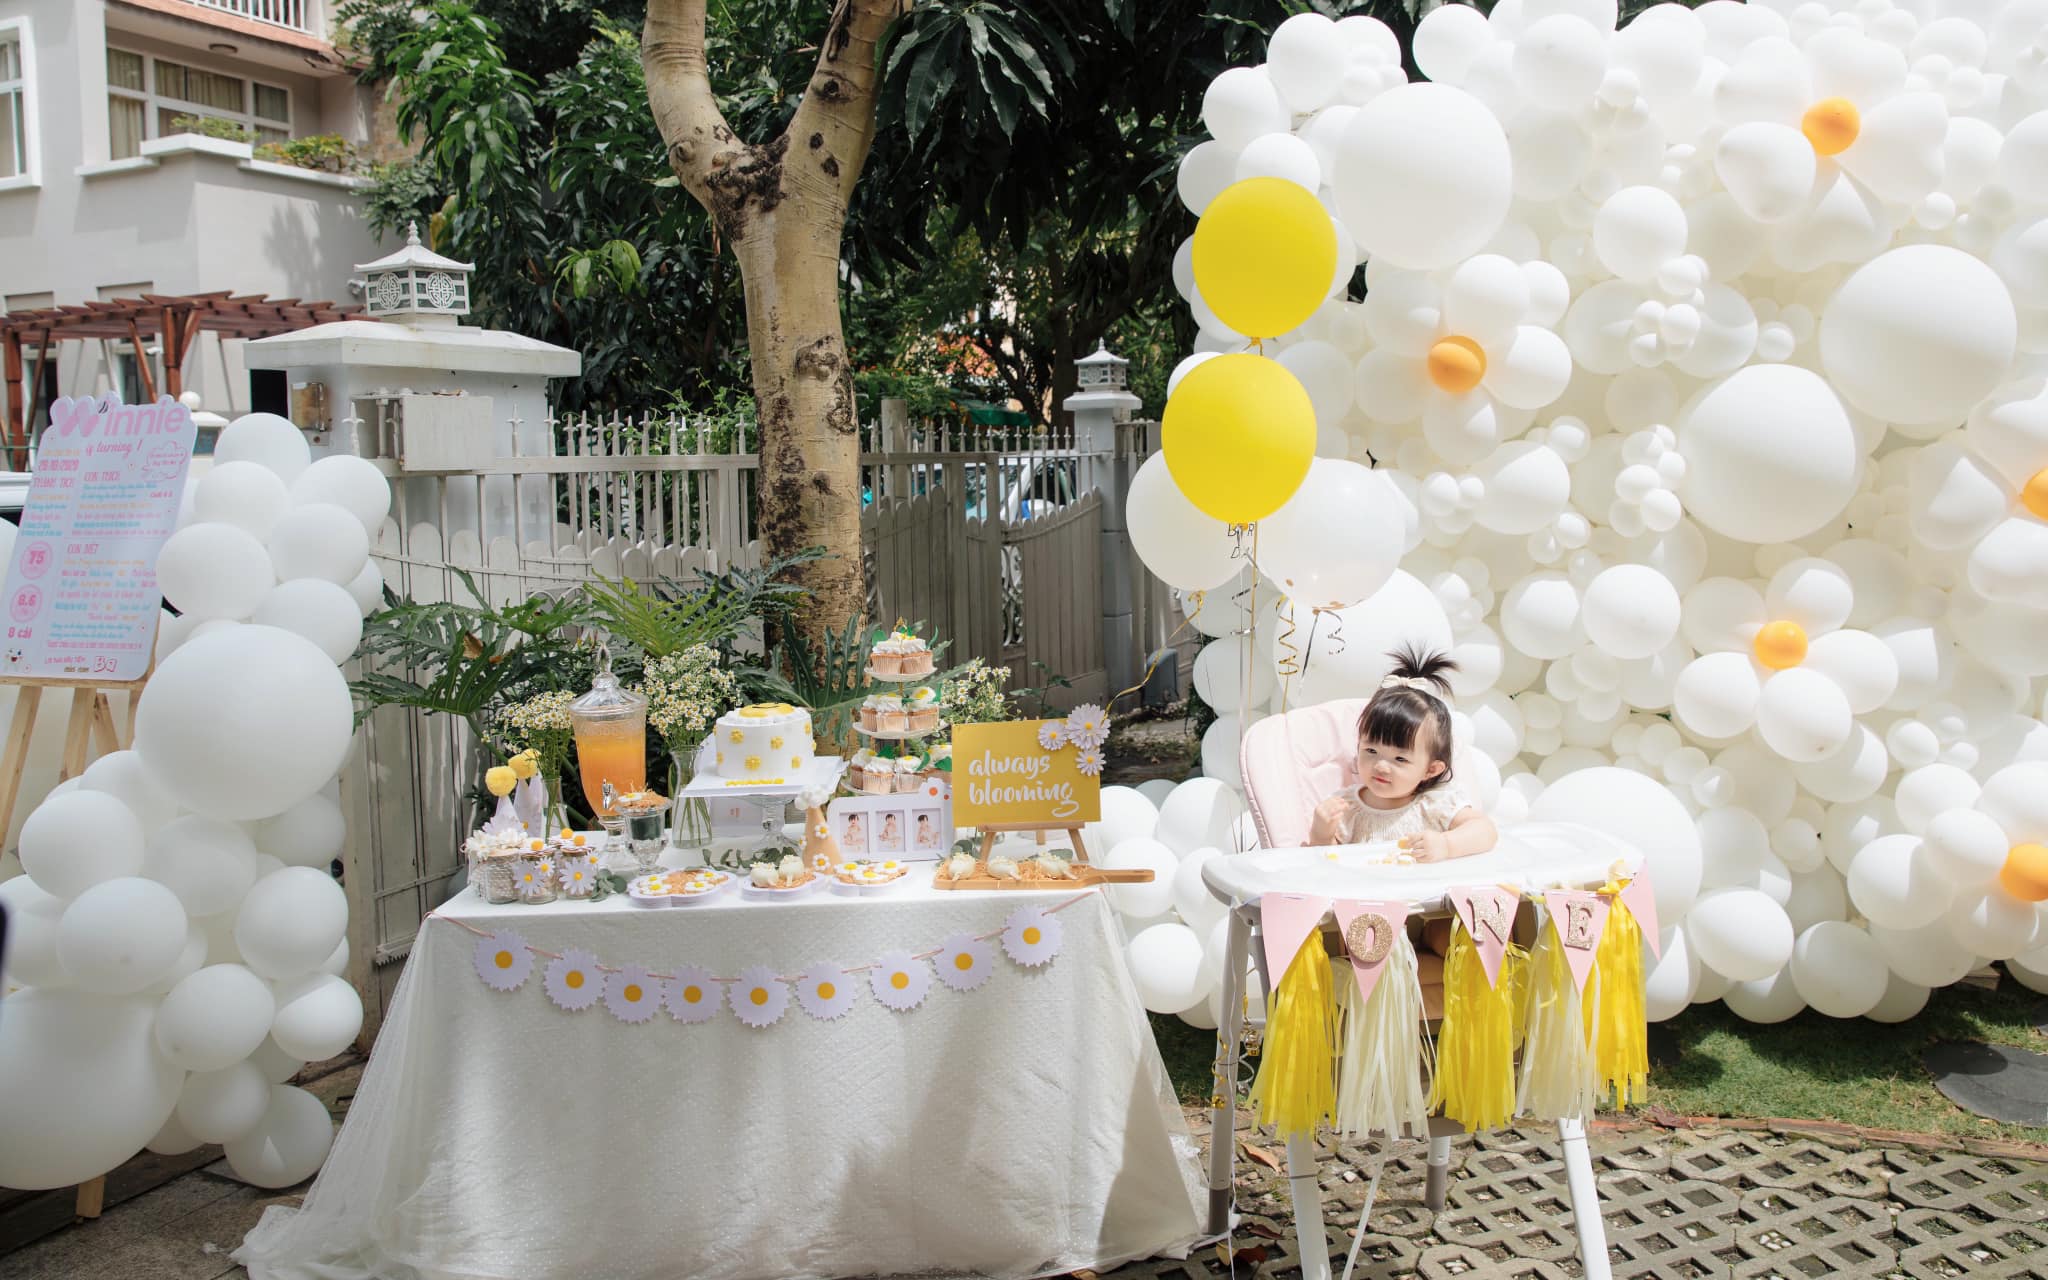 Không gian ngập sắc trắng - vàng trong tiệc sinh nhật của Winnie